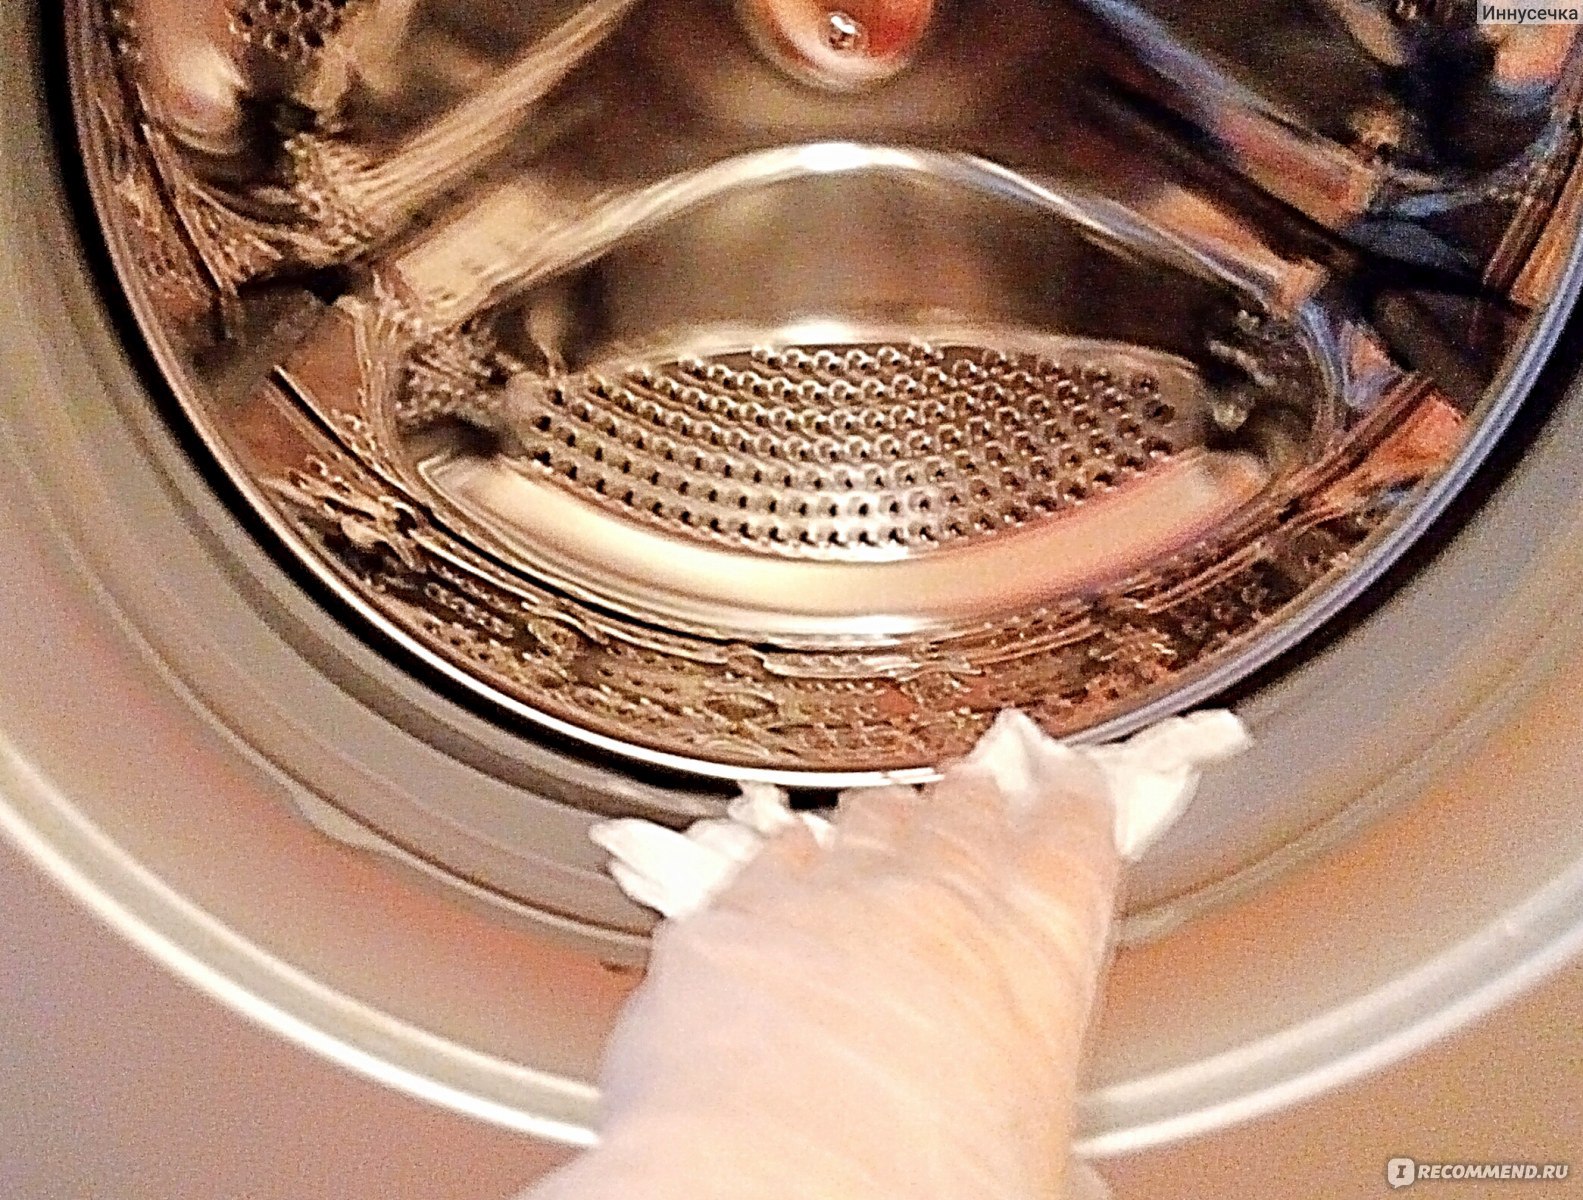 Как очистить стиральную машинку от запаха. Барабан машинки. Чистка стиральной машины. Запах из стиральной машины средства. Пахнет из барабана стиральной машины.